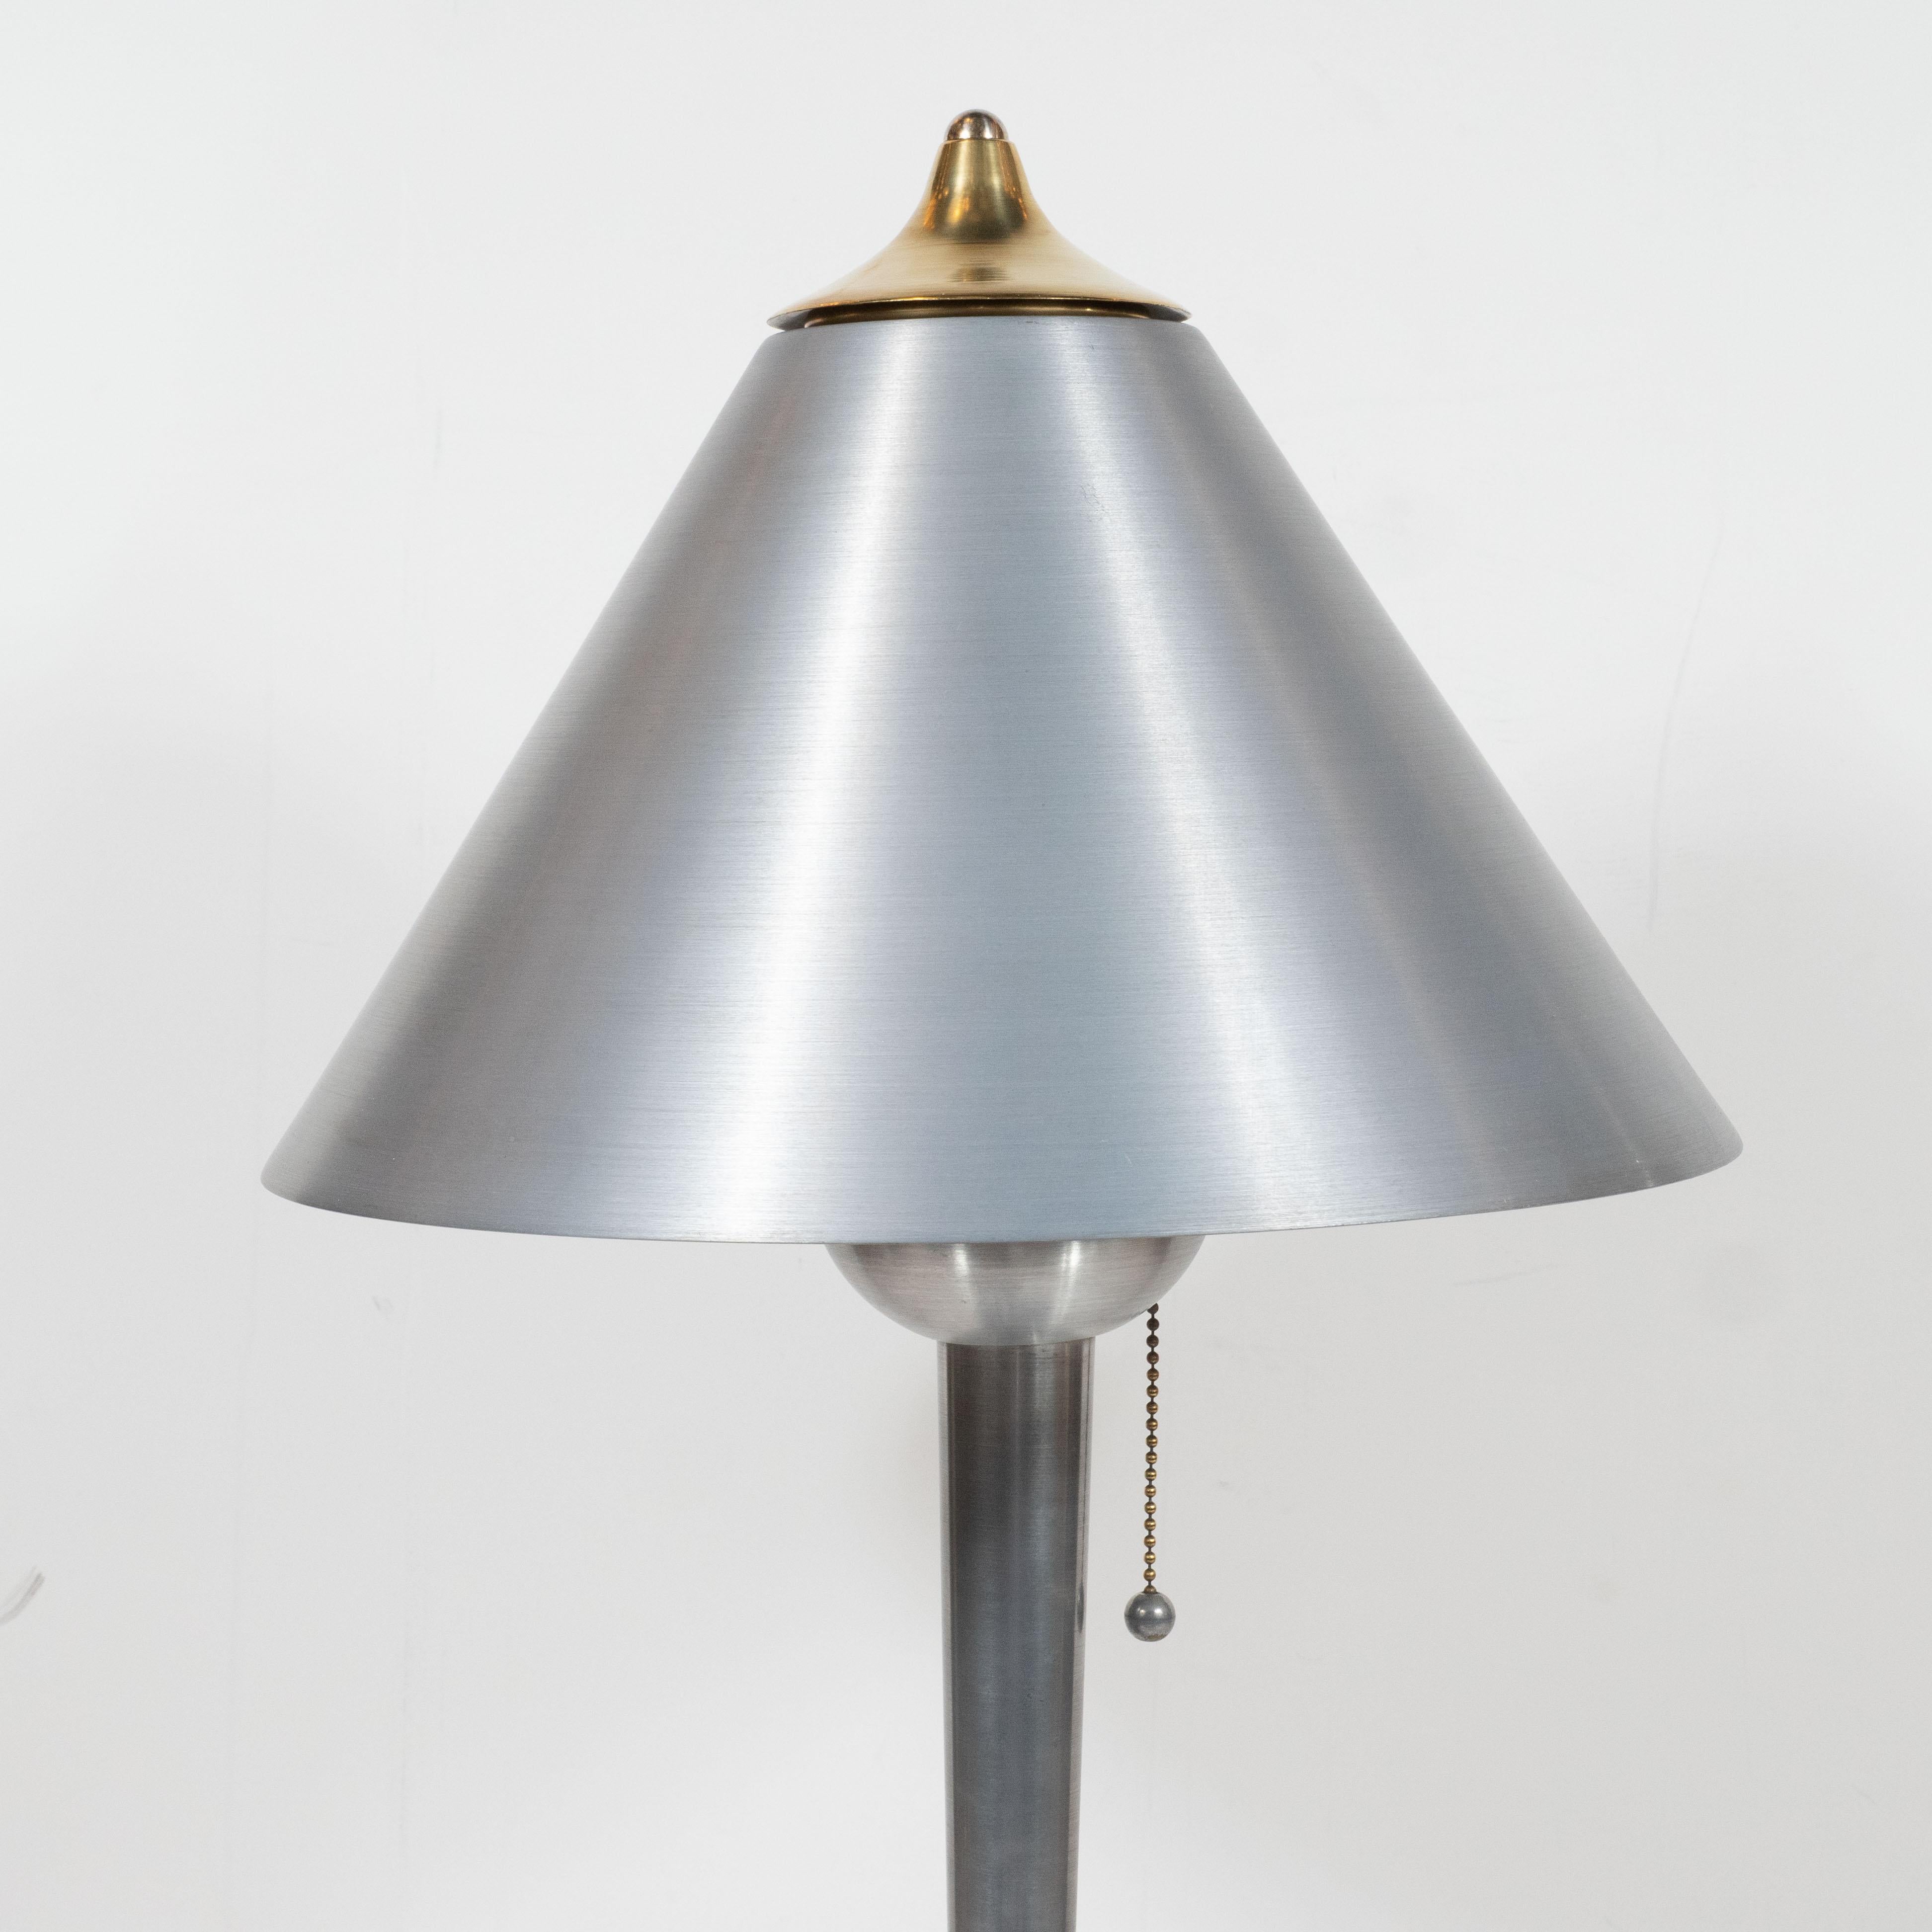 Diese raffinierte Art Deco Machin Age Tischlampe wurde um 1935 in den Vereinigten Staaten hergestellt. Sie verfügen über einen wolkenkratzerartigen, zweistufigen Sockel aus gebürstetem Aluminium, aus dem ein zylindrischer Körper aufsteigt, der sich